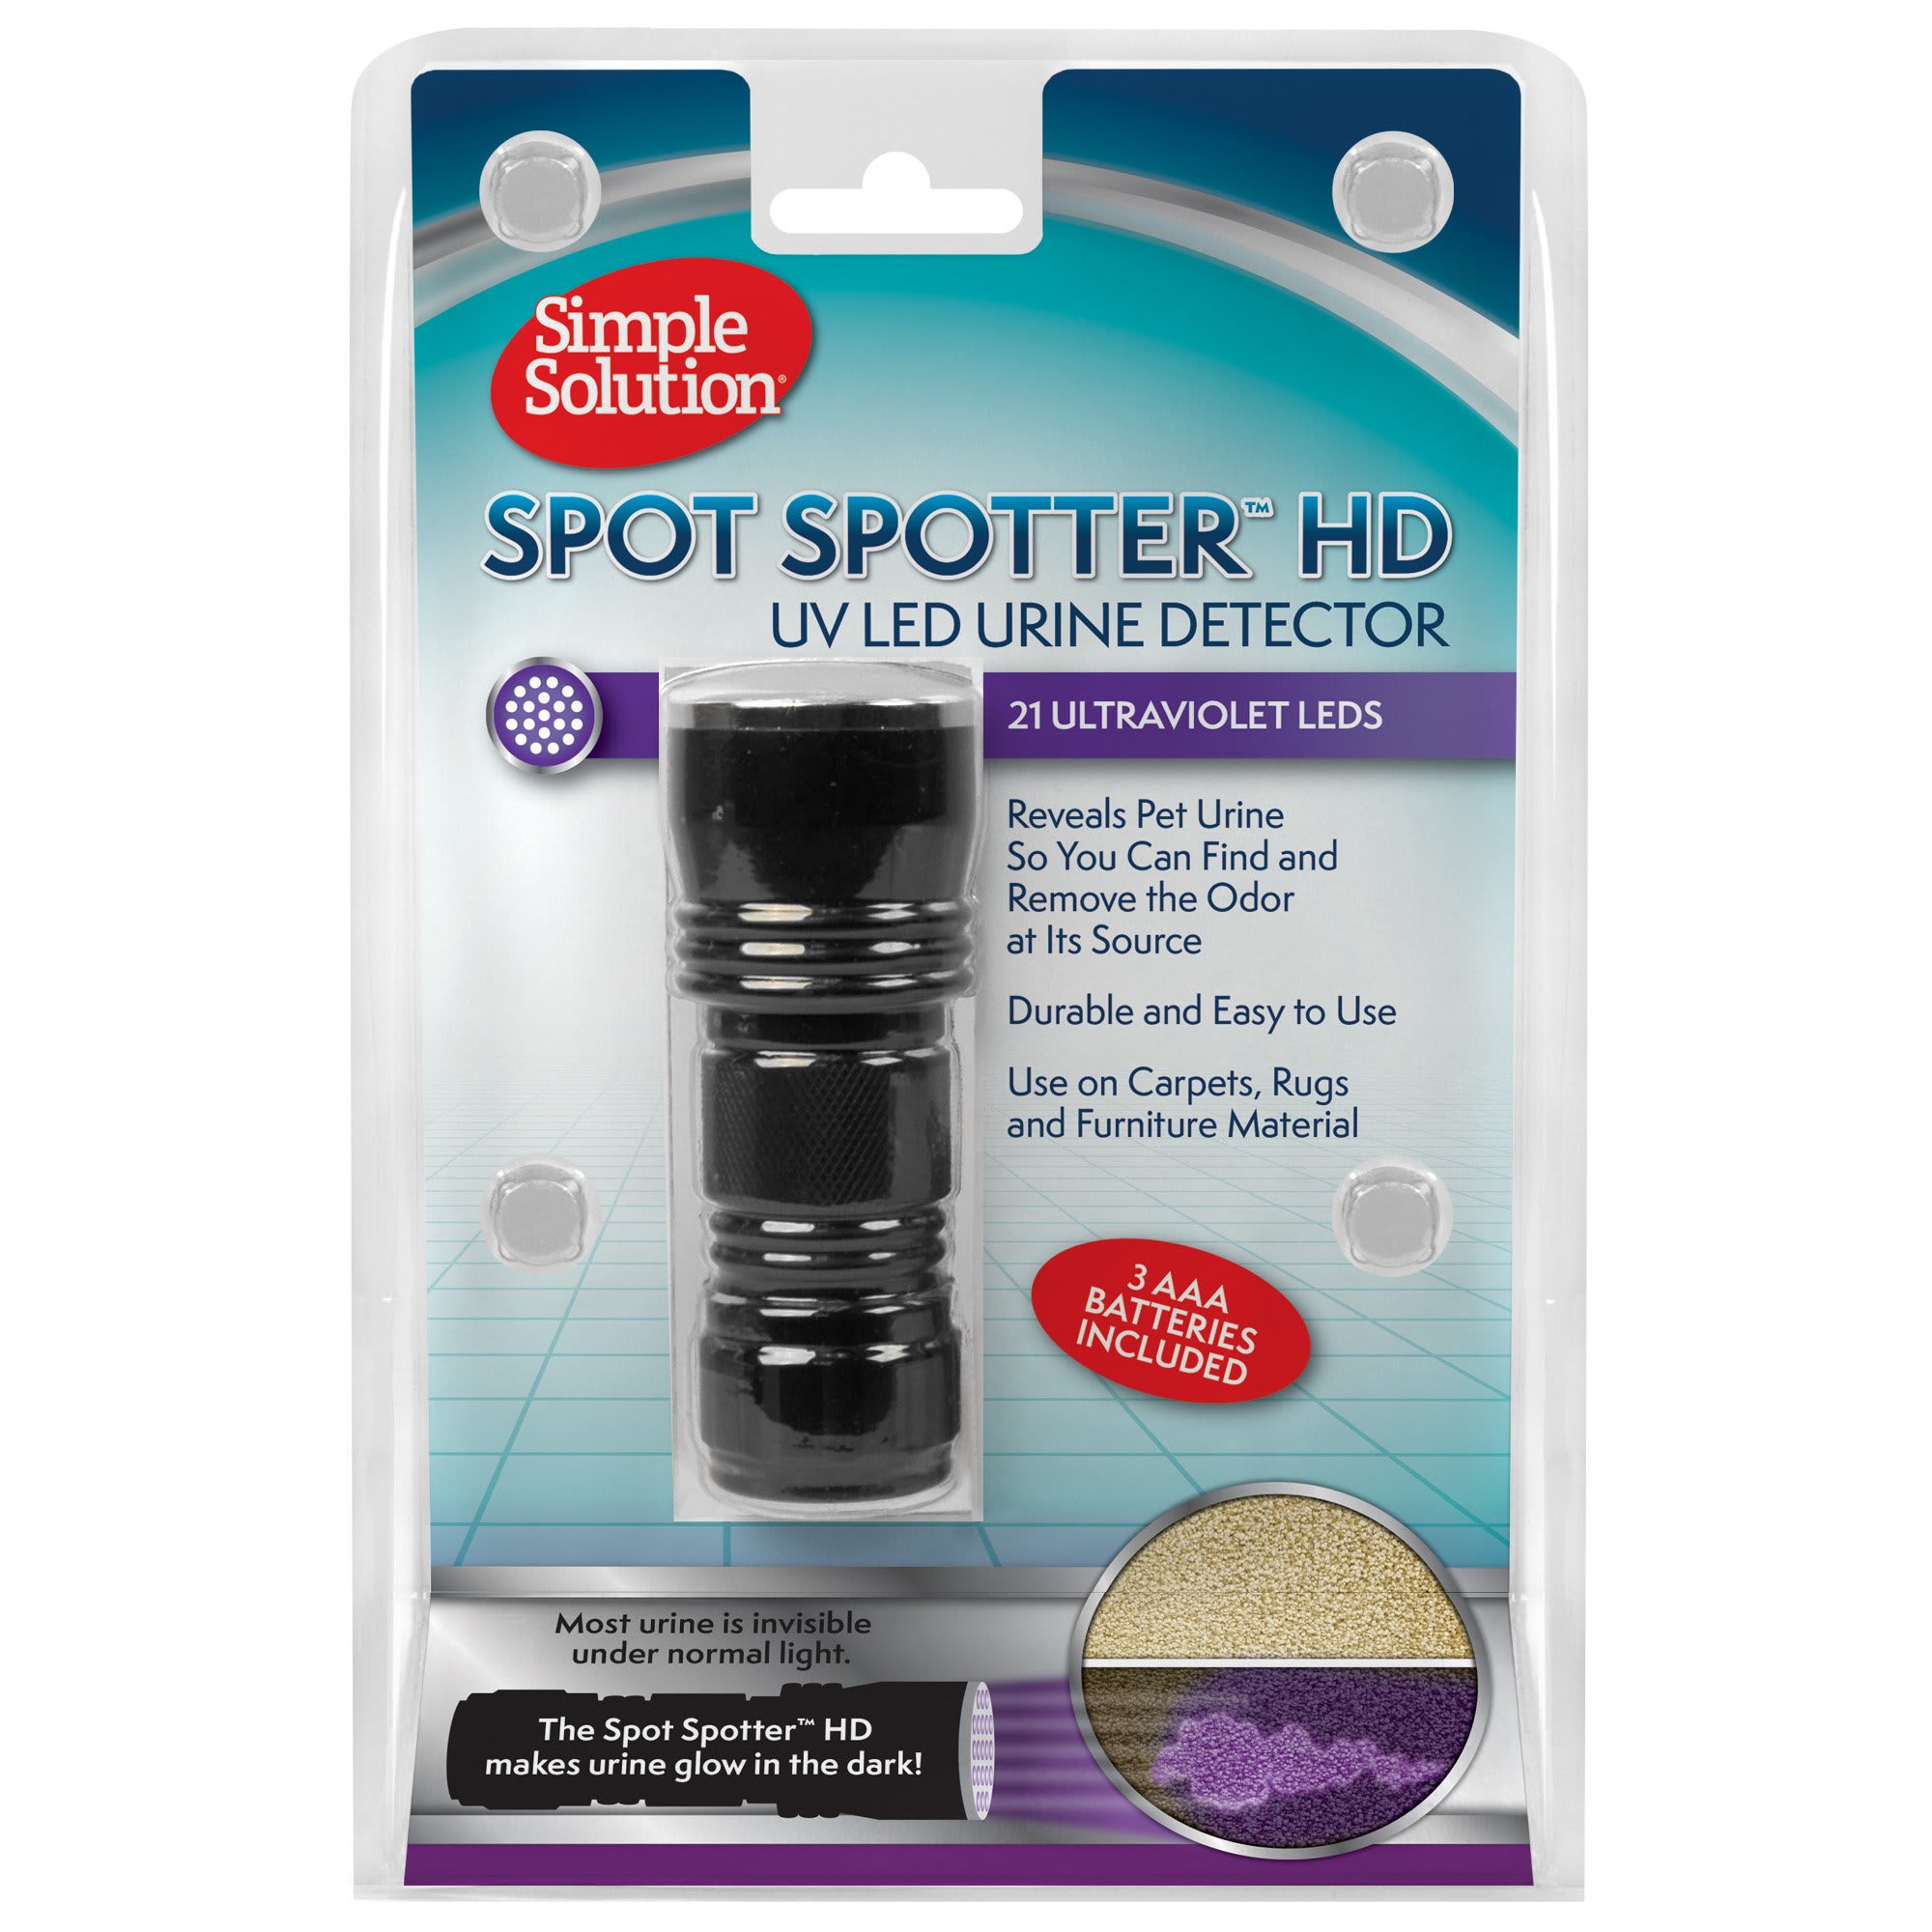 Simple Solution Spot Spot Détecteur durine pour animal domestique UV LED